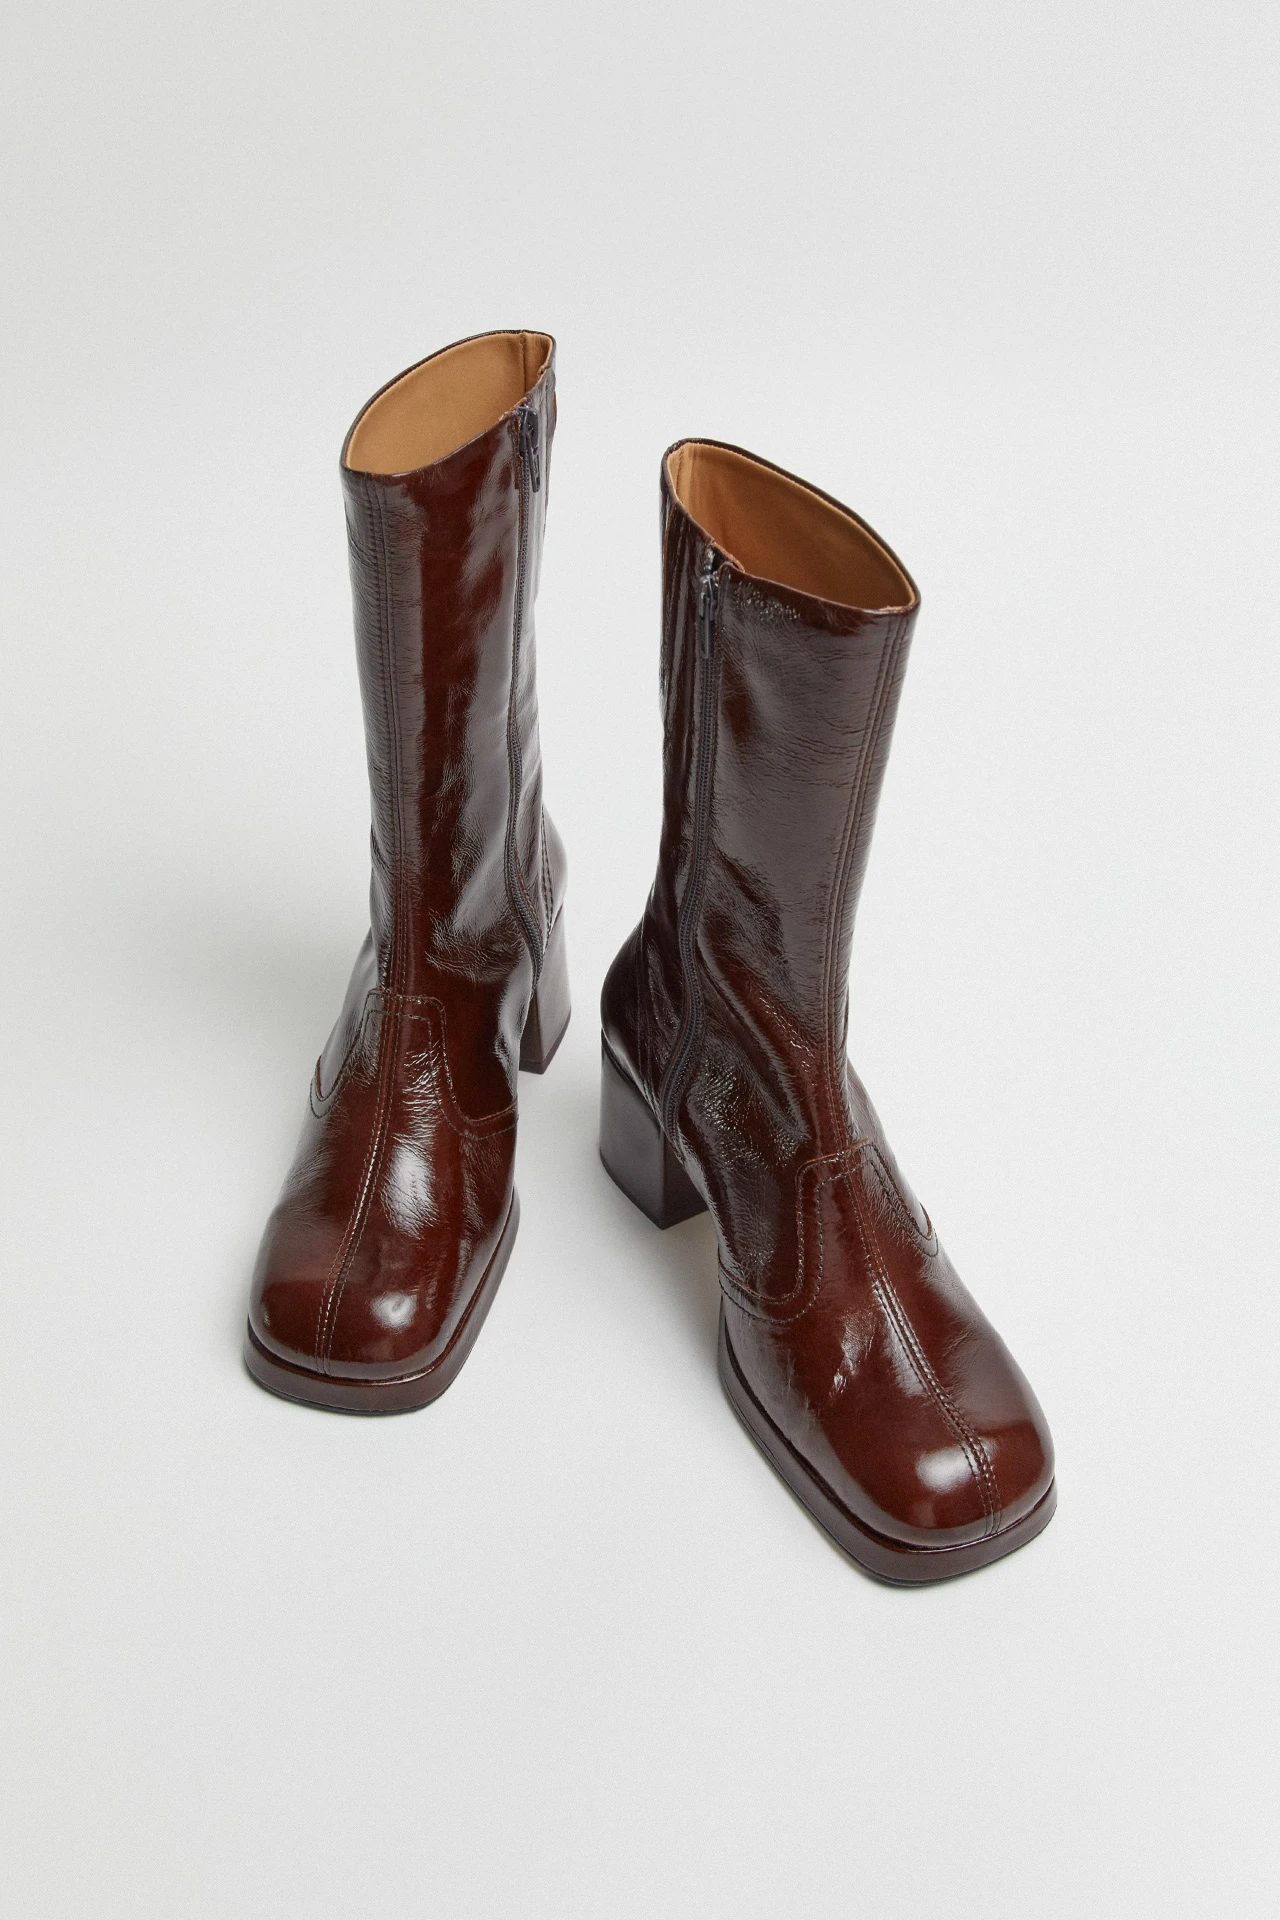 Miista-cass-brown-patent-boots-04